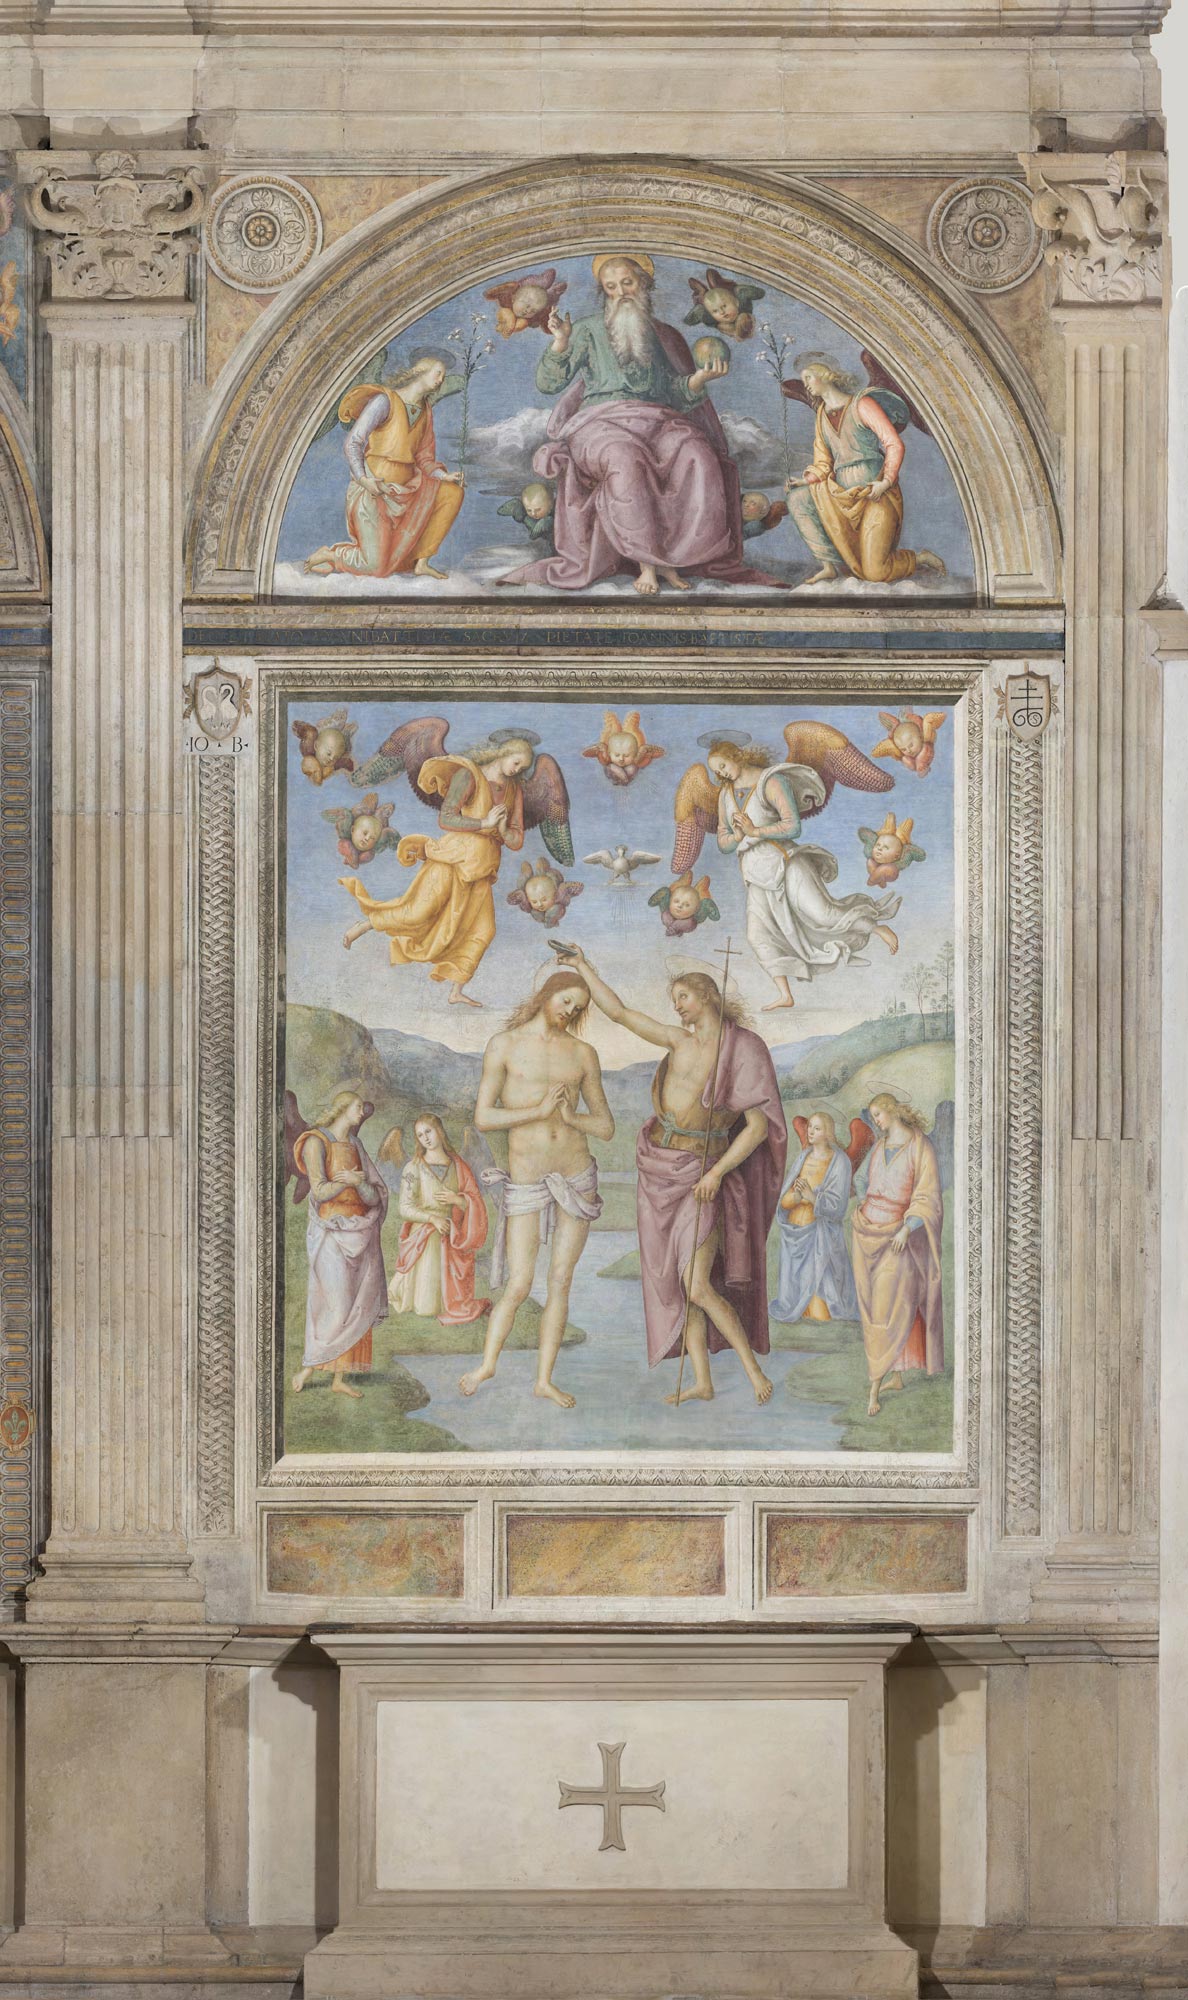 Perugino, Baptism of Christ (1508-1513; fresco, 445 x 228 cm; Foligno, Oratorio della Nunziatella)